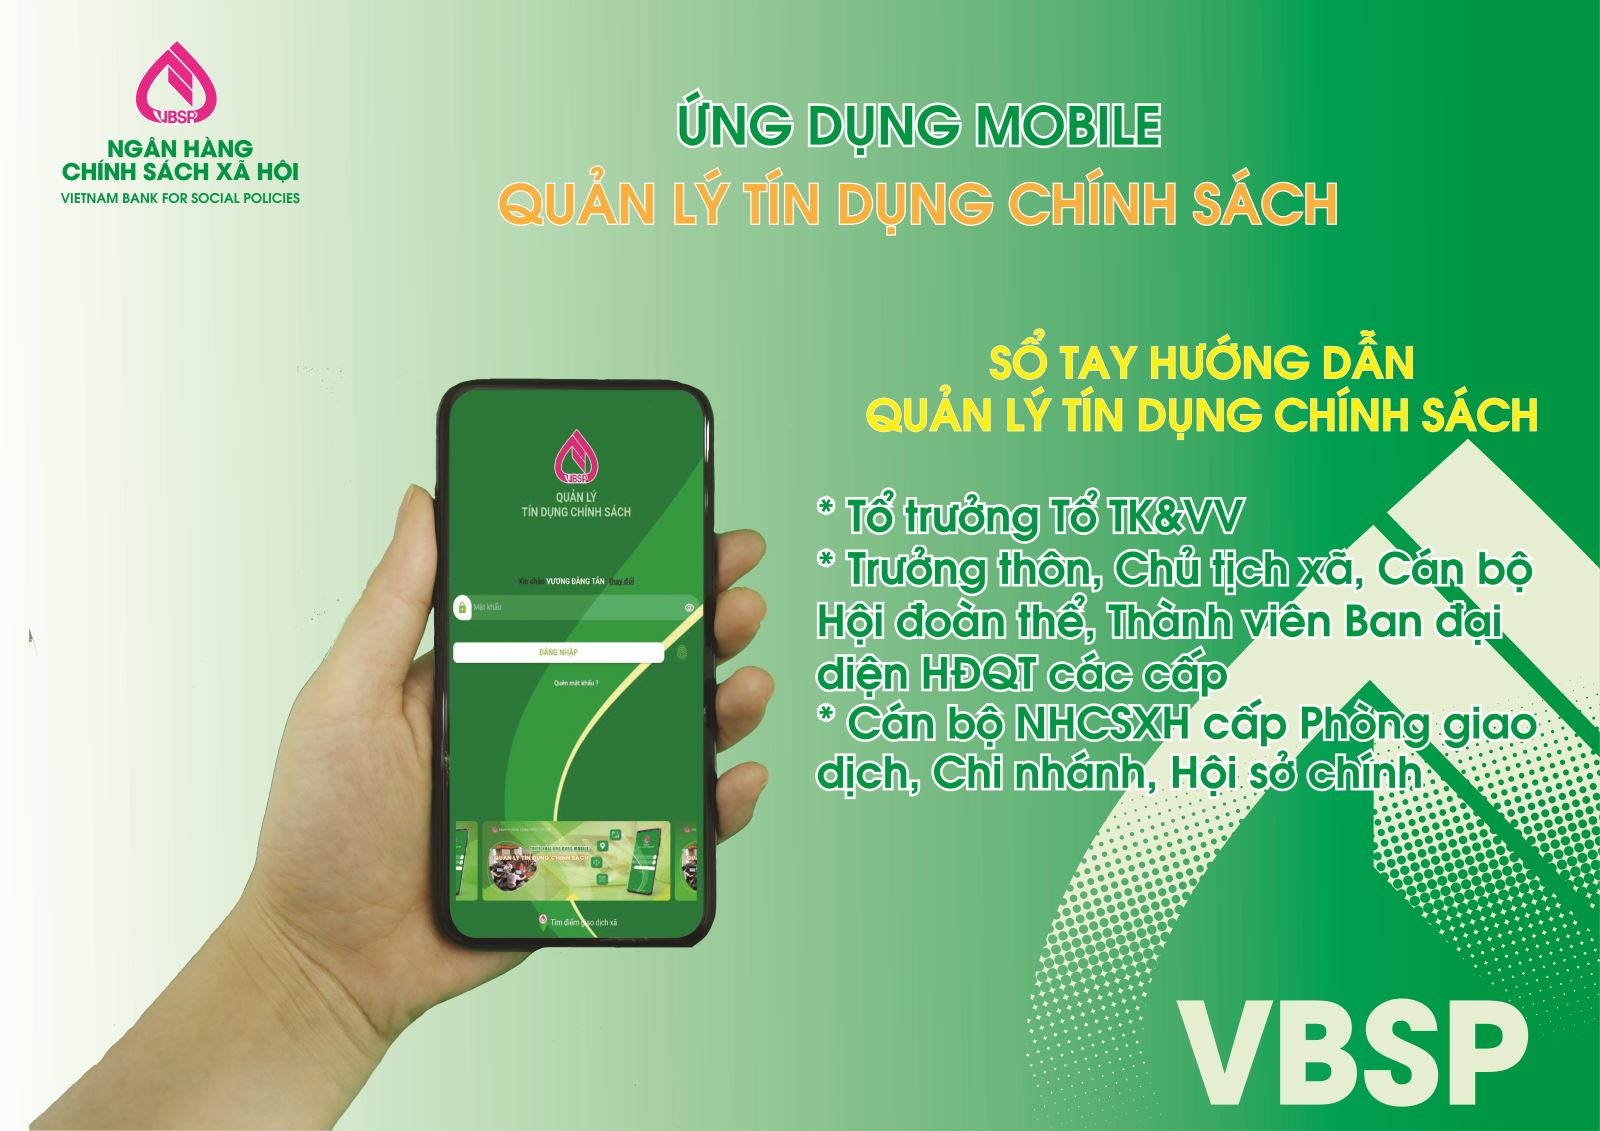 Phòng giao dịch Ngân hàng Chính sách Xã hội huyện Đăk Tô triển khai dịch vụ Mobile Banking đến khách hàng